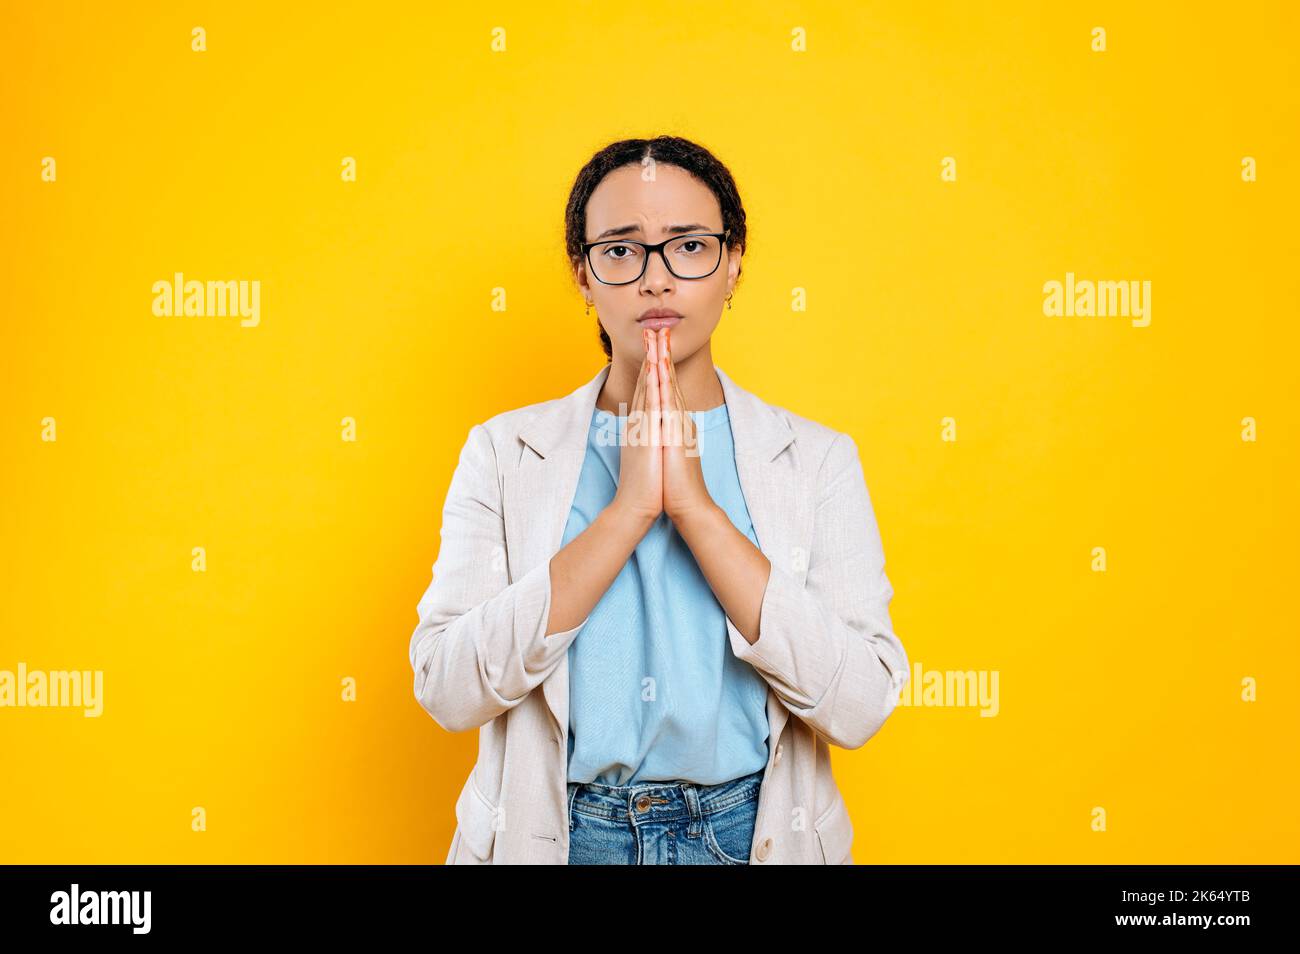 Nach etwas fragen. Flehend süße brasilianische oder latino junge Brünette Frau, Firmenarbeiterin, hält die Hände in einem gefalteten Gebetsschild, schaut auf die Kamera, steht auf isoliertem orangefarbenem Hintergrund Stockfoto